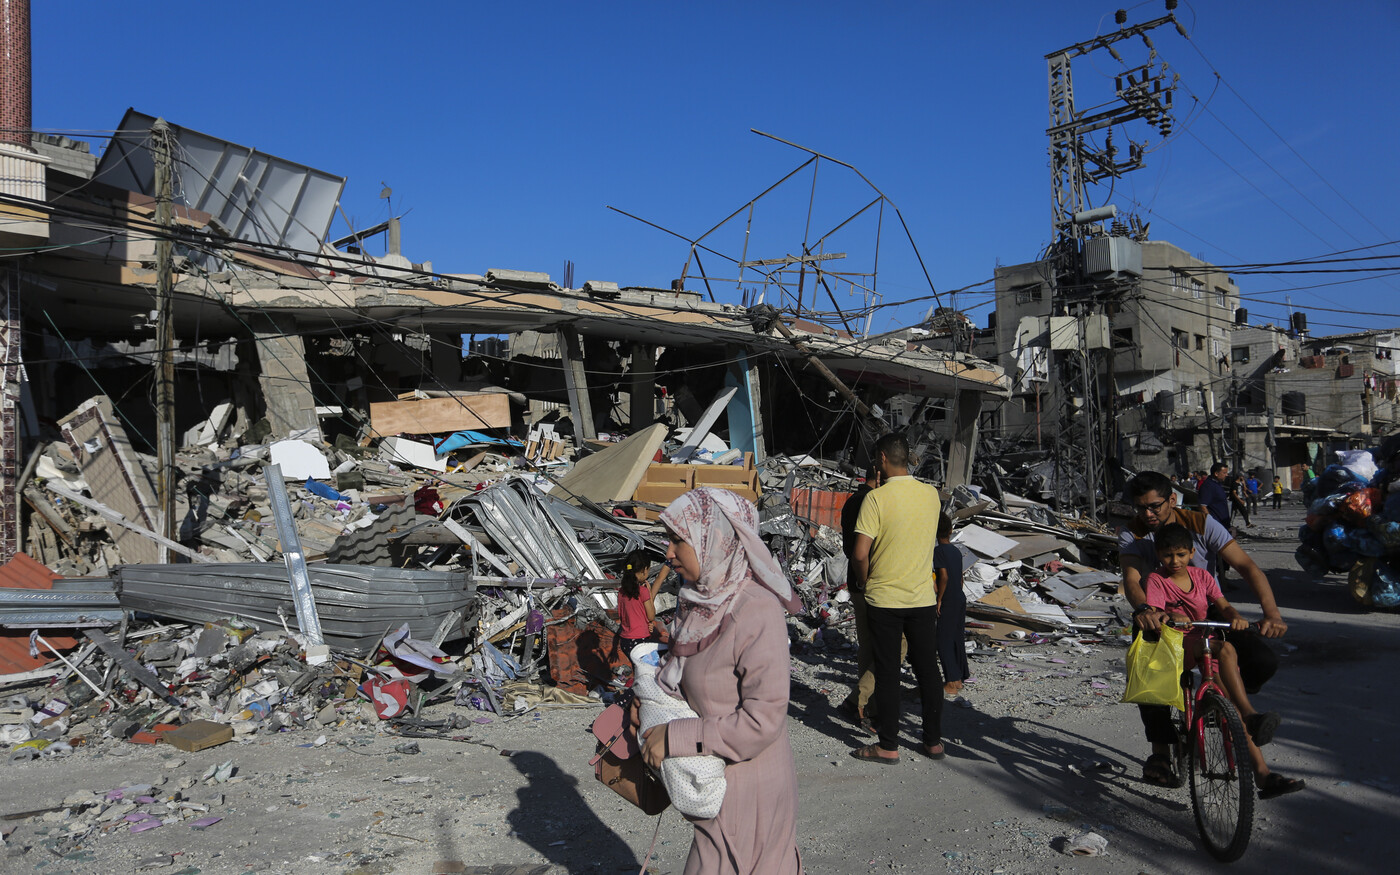 ENSZ-szervezetek elutasítják a biztonsági zónákra vonatkozó izraeli elképzeléseket Gázában